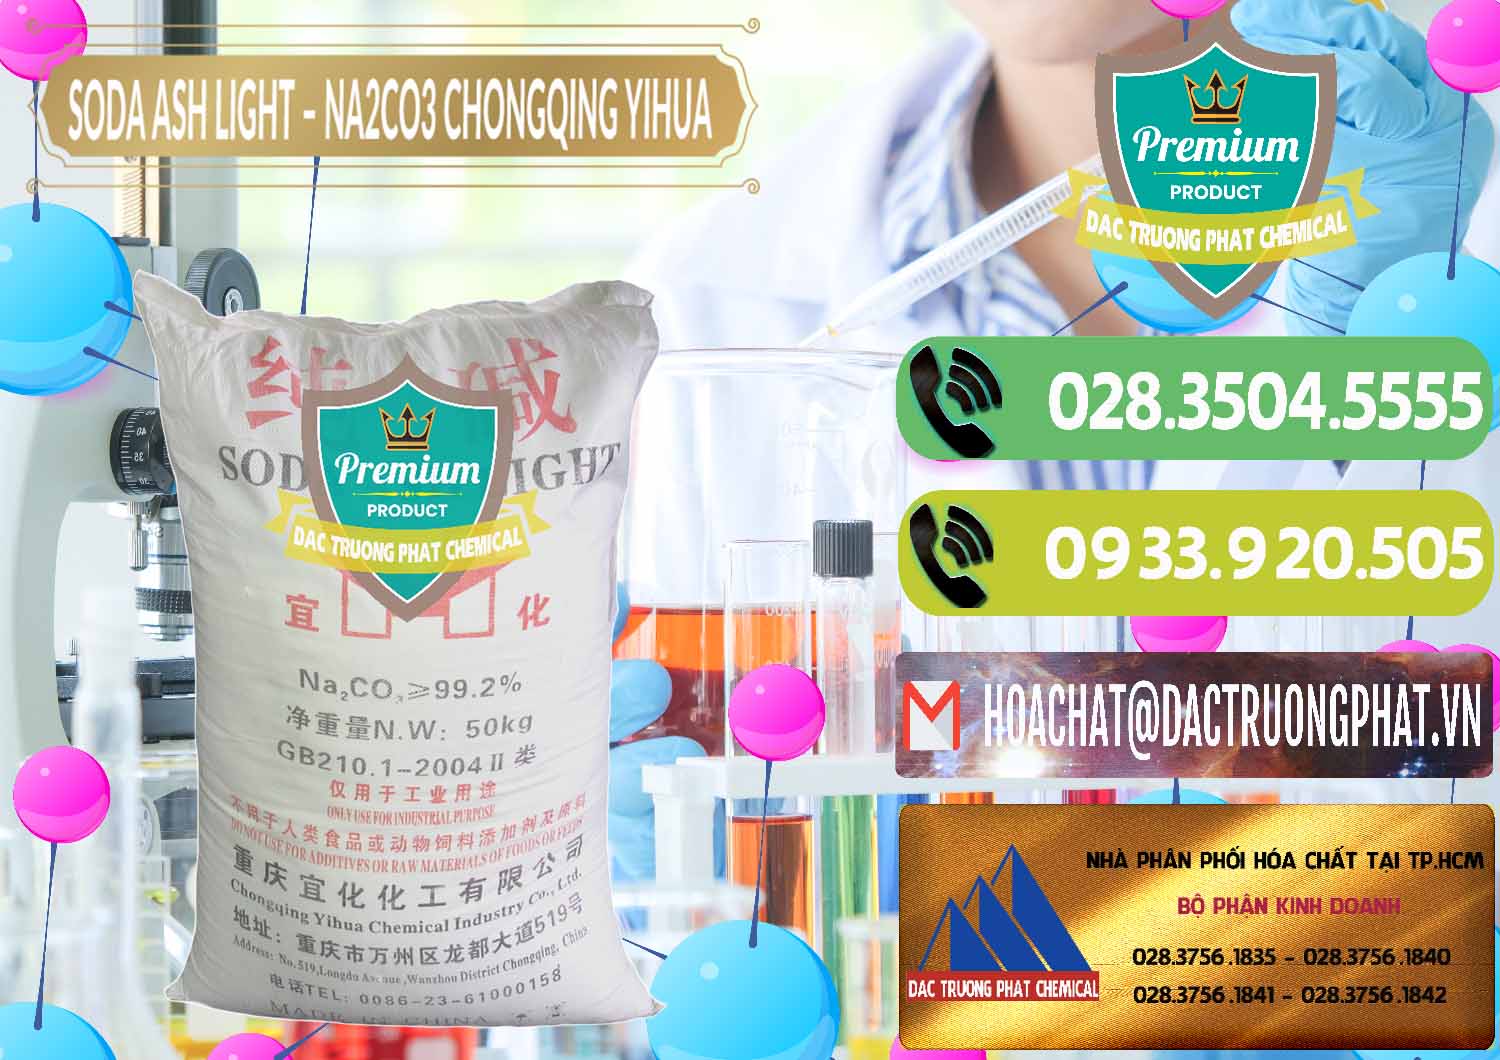 Chuyên bán - cung ứng Soda Ash Light - NA2CO3 Chongqing Yihua Trung Quốc China - 0129 - Cty phân phối - kinh doanh hóa chất tại TP.HCM - hoachatmientay.vn